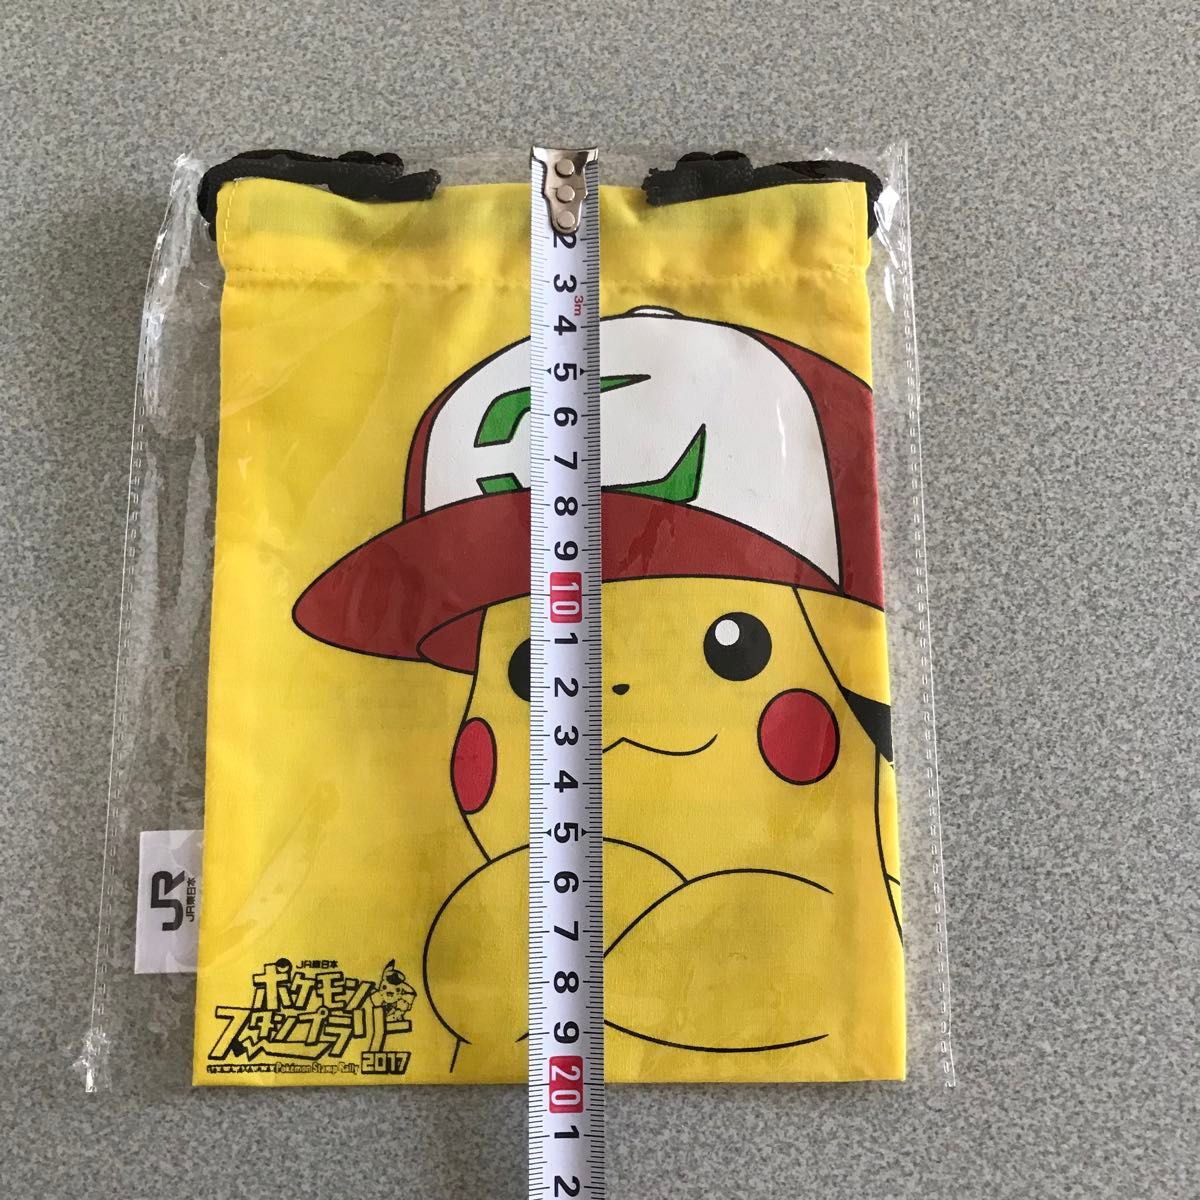 ポケットモンスター DyDoオリジナル 赤 手袋JR東日本スタンプラリーオリジナル 黄色 巾着 Pokmon Pikachu